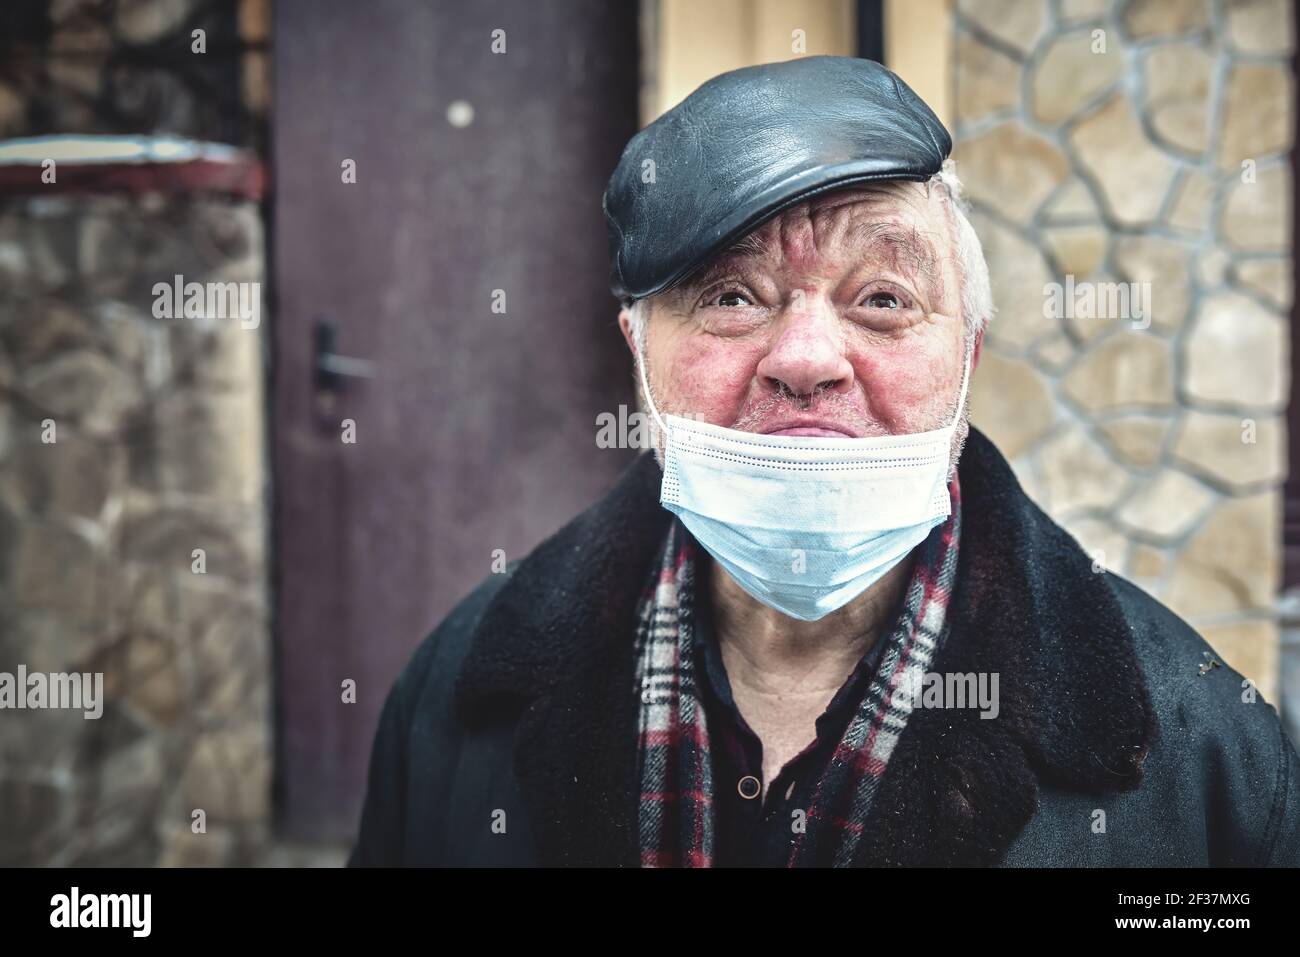 Kiew. Ukraine - Februar 4: 2021 die Schreie eines verletzten Obdachlosen, der eine Schutzmaske trägt, in eine Kamera schaut und sich in Quarantäne deprimiert fühlt Stockfoto